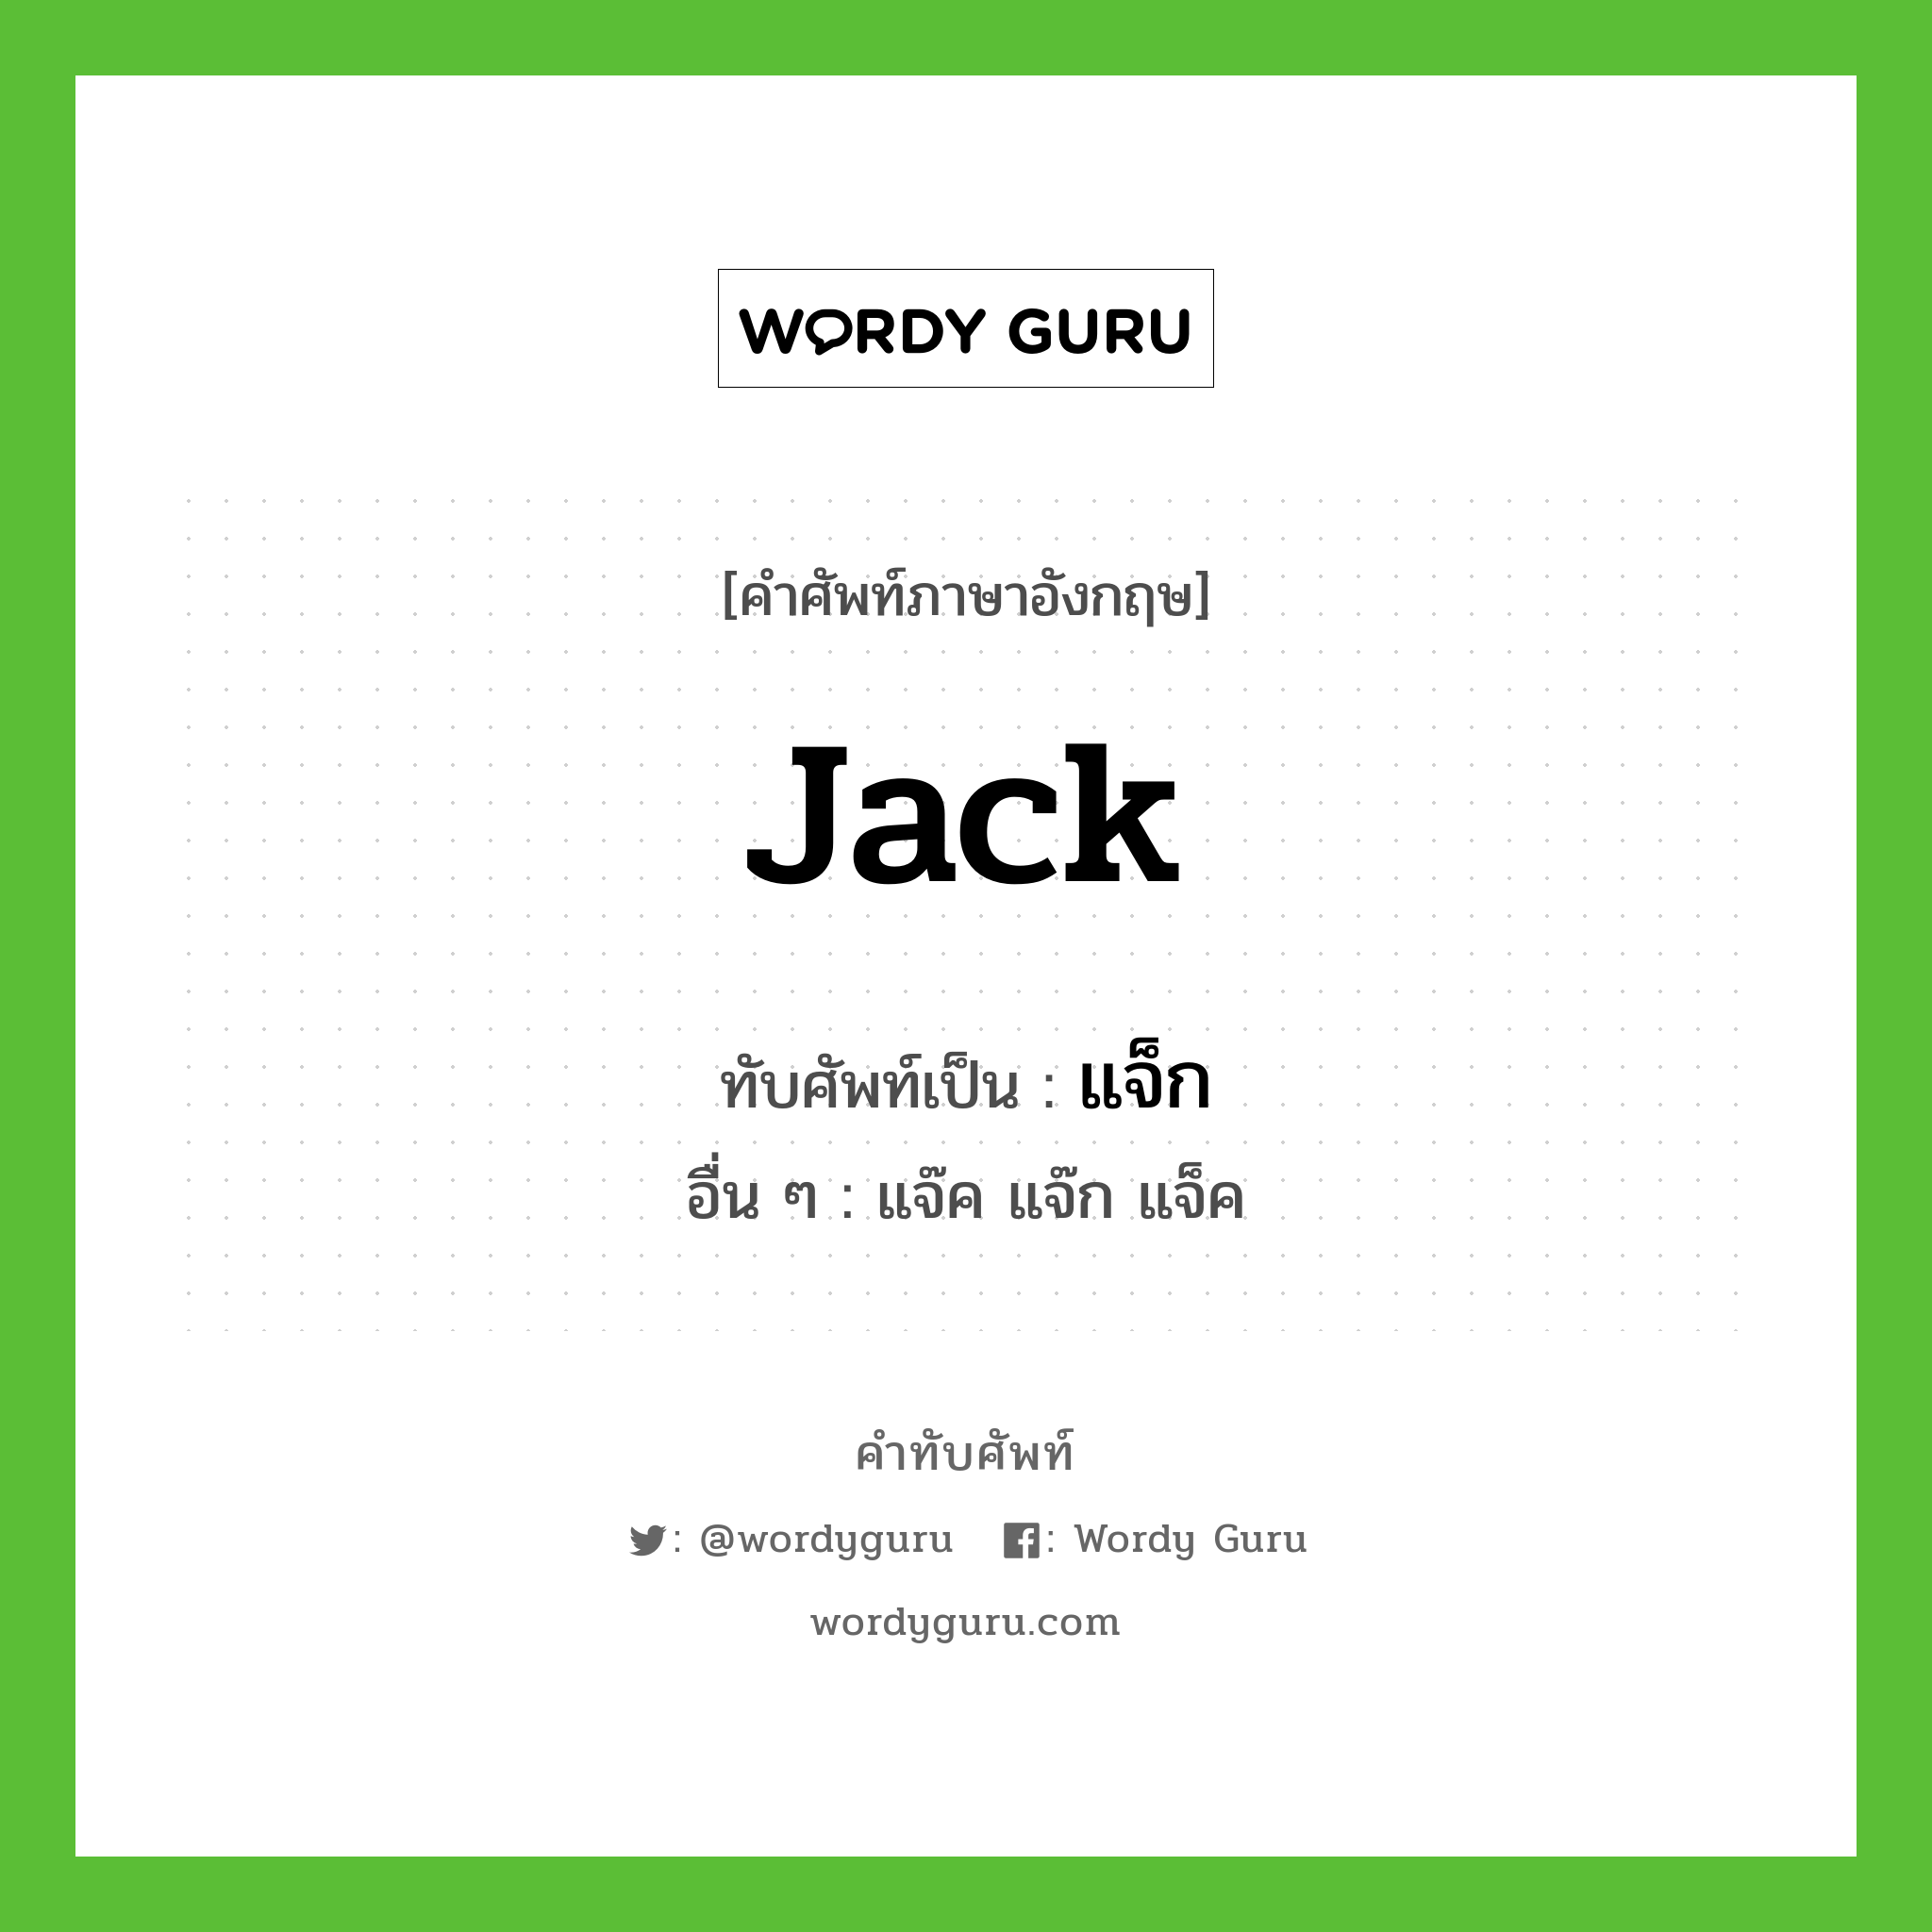 jack เขียนเป็นคำไทยว่าอะไร?, คำศัพท์ภาษาอังกฤษ jack ทับศัพท์เป็น แจ็ก อื่น ๆ แจ๊ค แจ๊ก แจ็ค